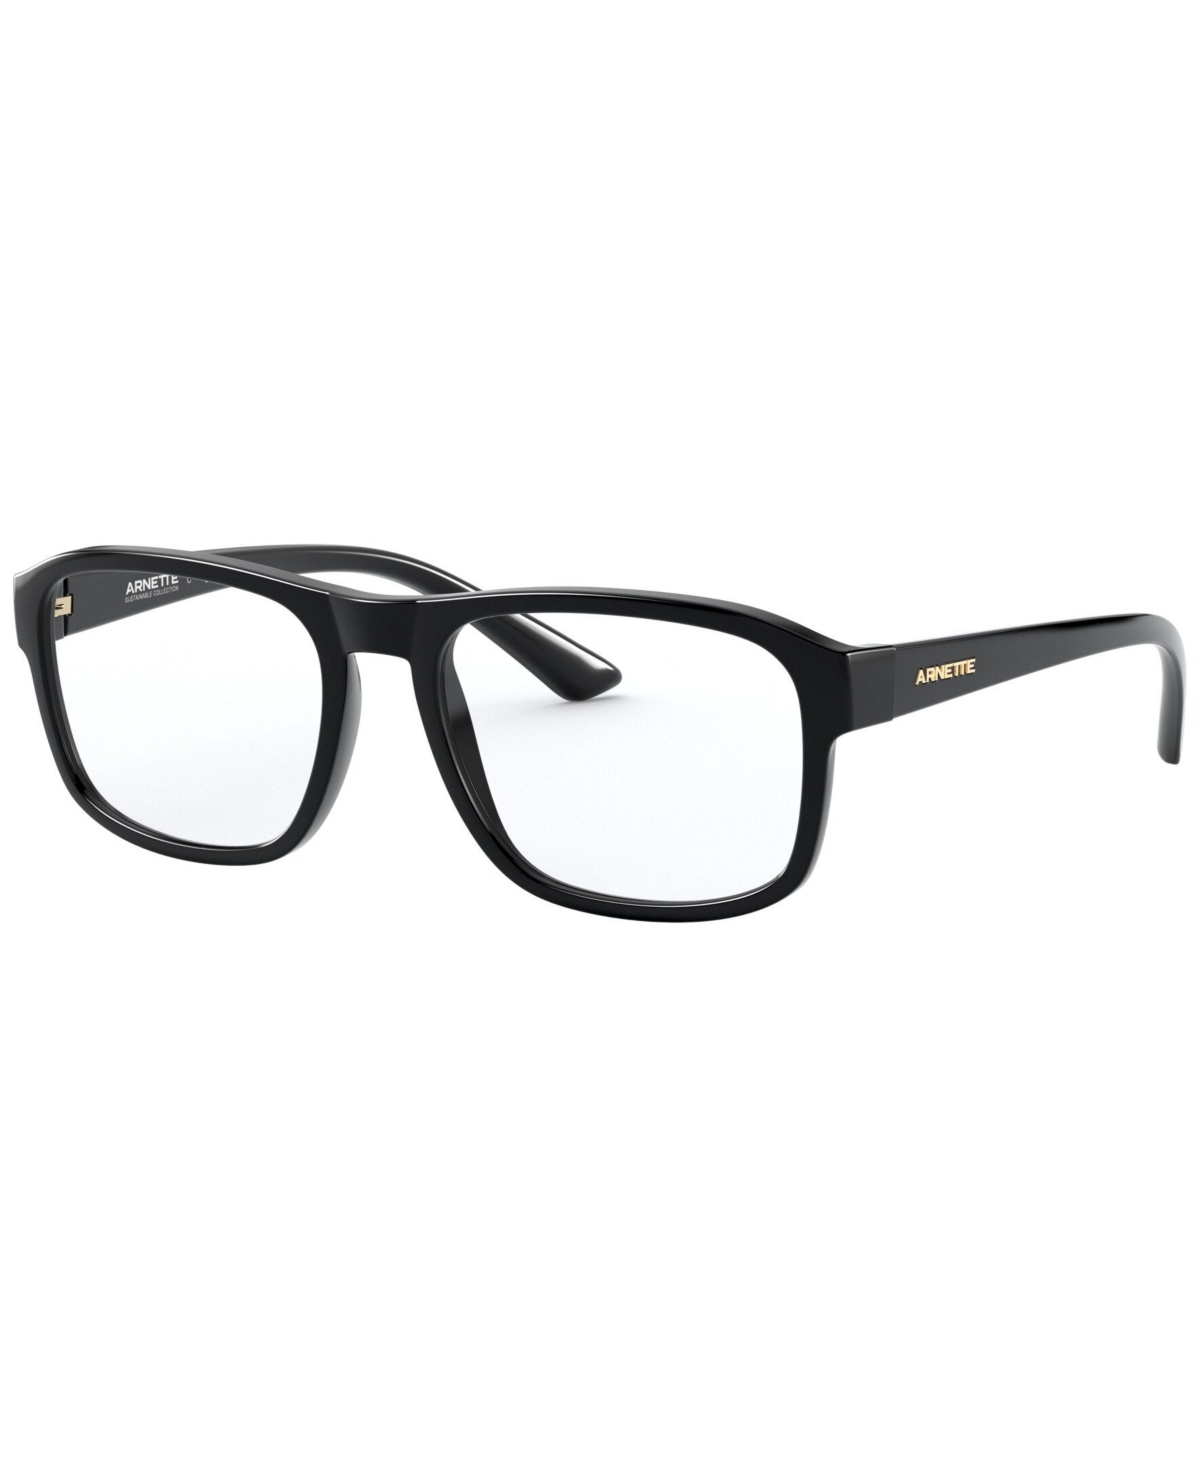 AN7176 Men's Oval Eyeglasses - Black